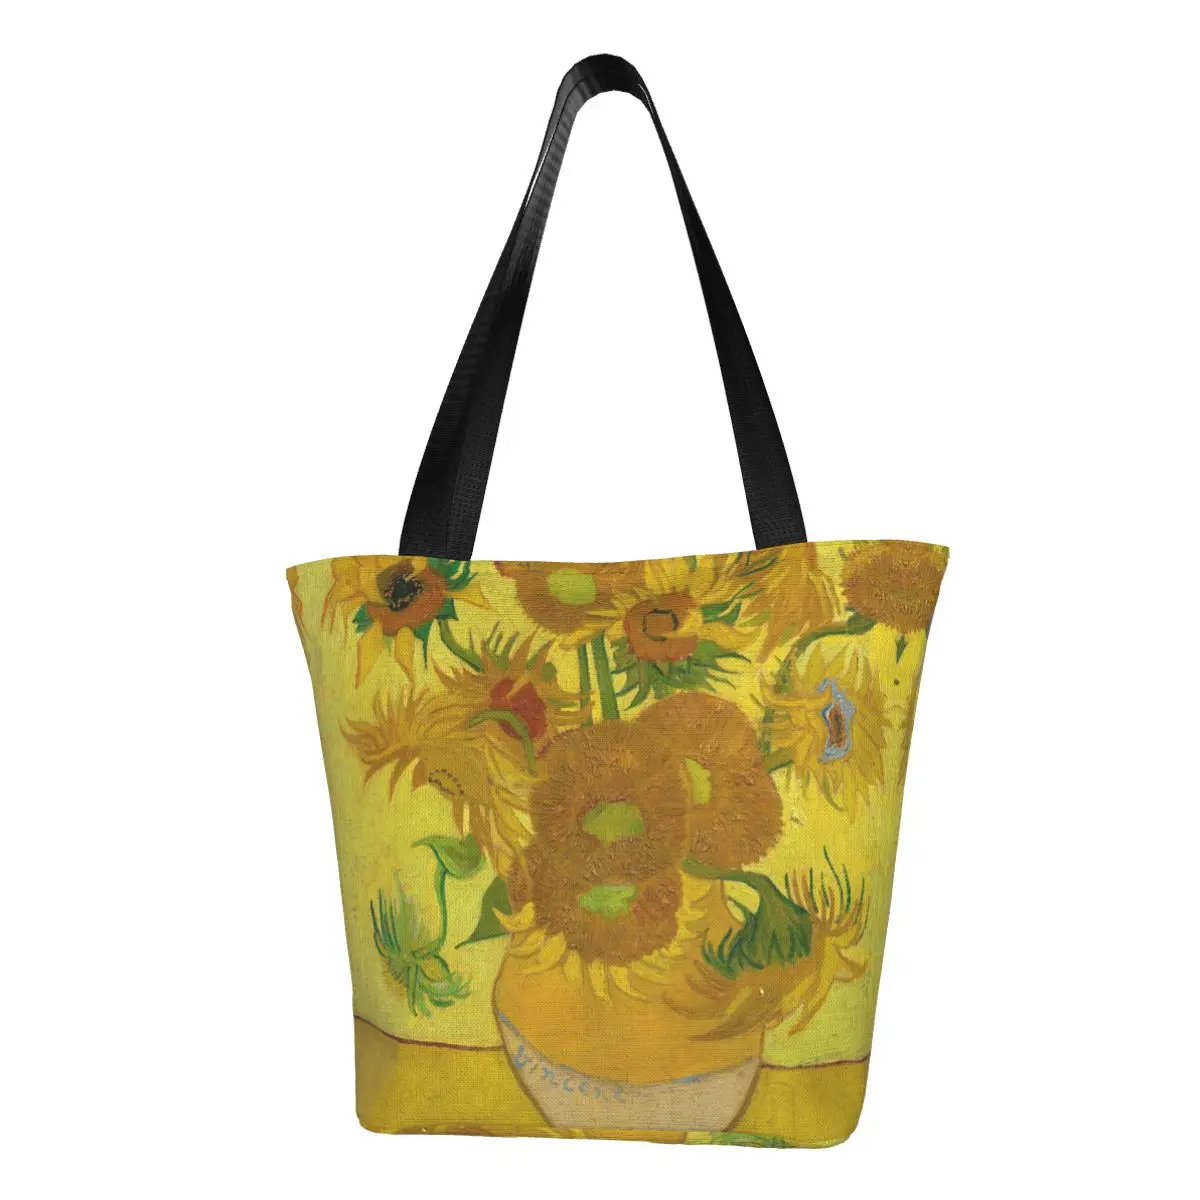 Сумка-тоут Twelve Sunflowers для покупок в продуктовых магазинах, картина Винсента Ван Гога, холст, сумка для покупок, сумки большой емкости